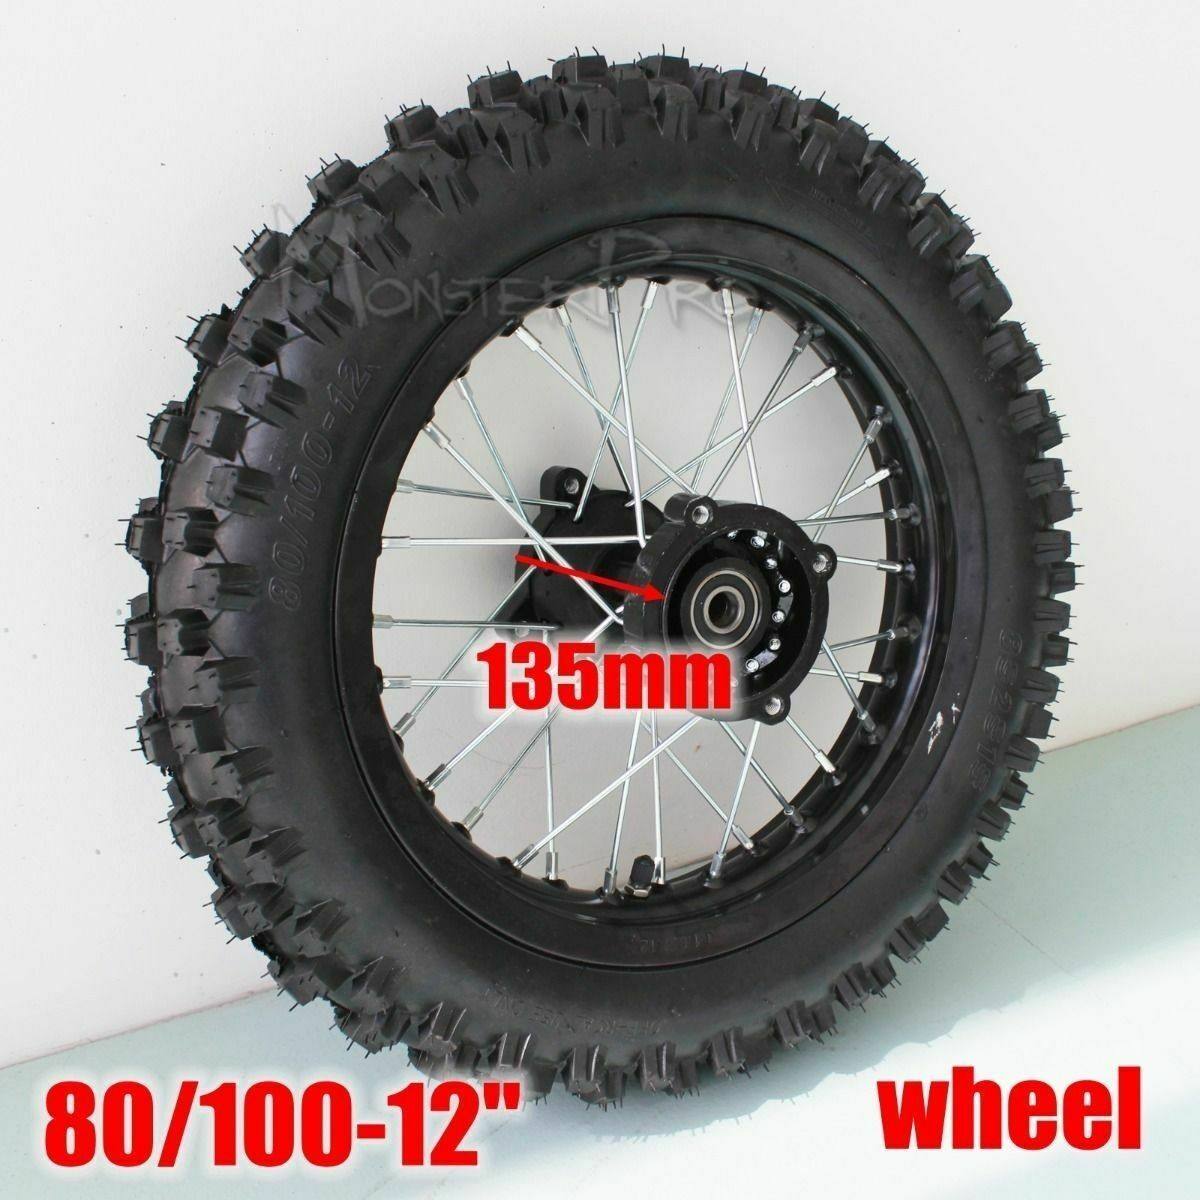 12mm Axle 80/100-12 Inch Rear Knobby Wheel Dirt Pit Pro Trail Bike Motorcross - TDRMOTO